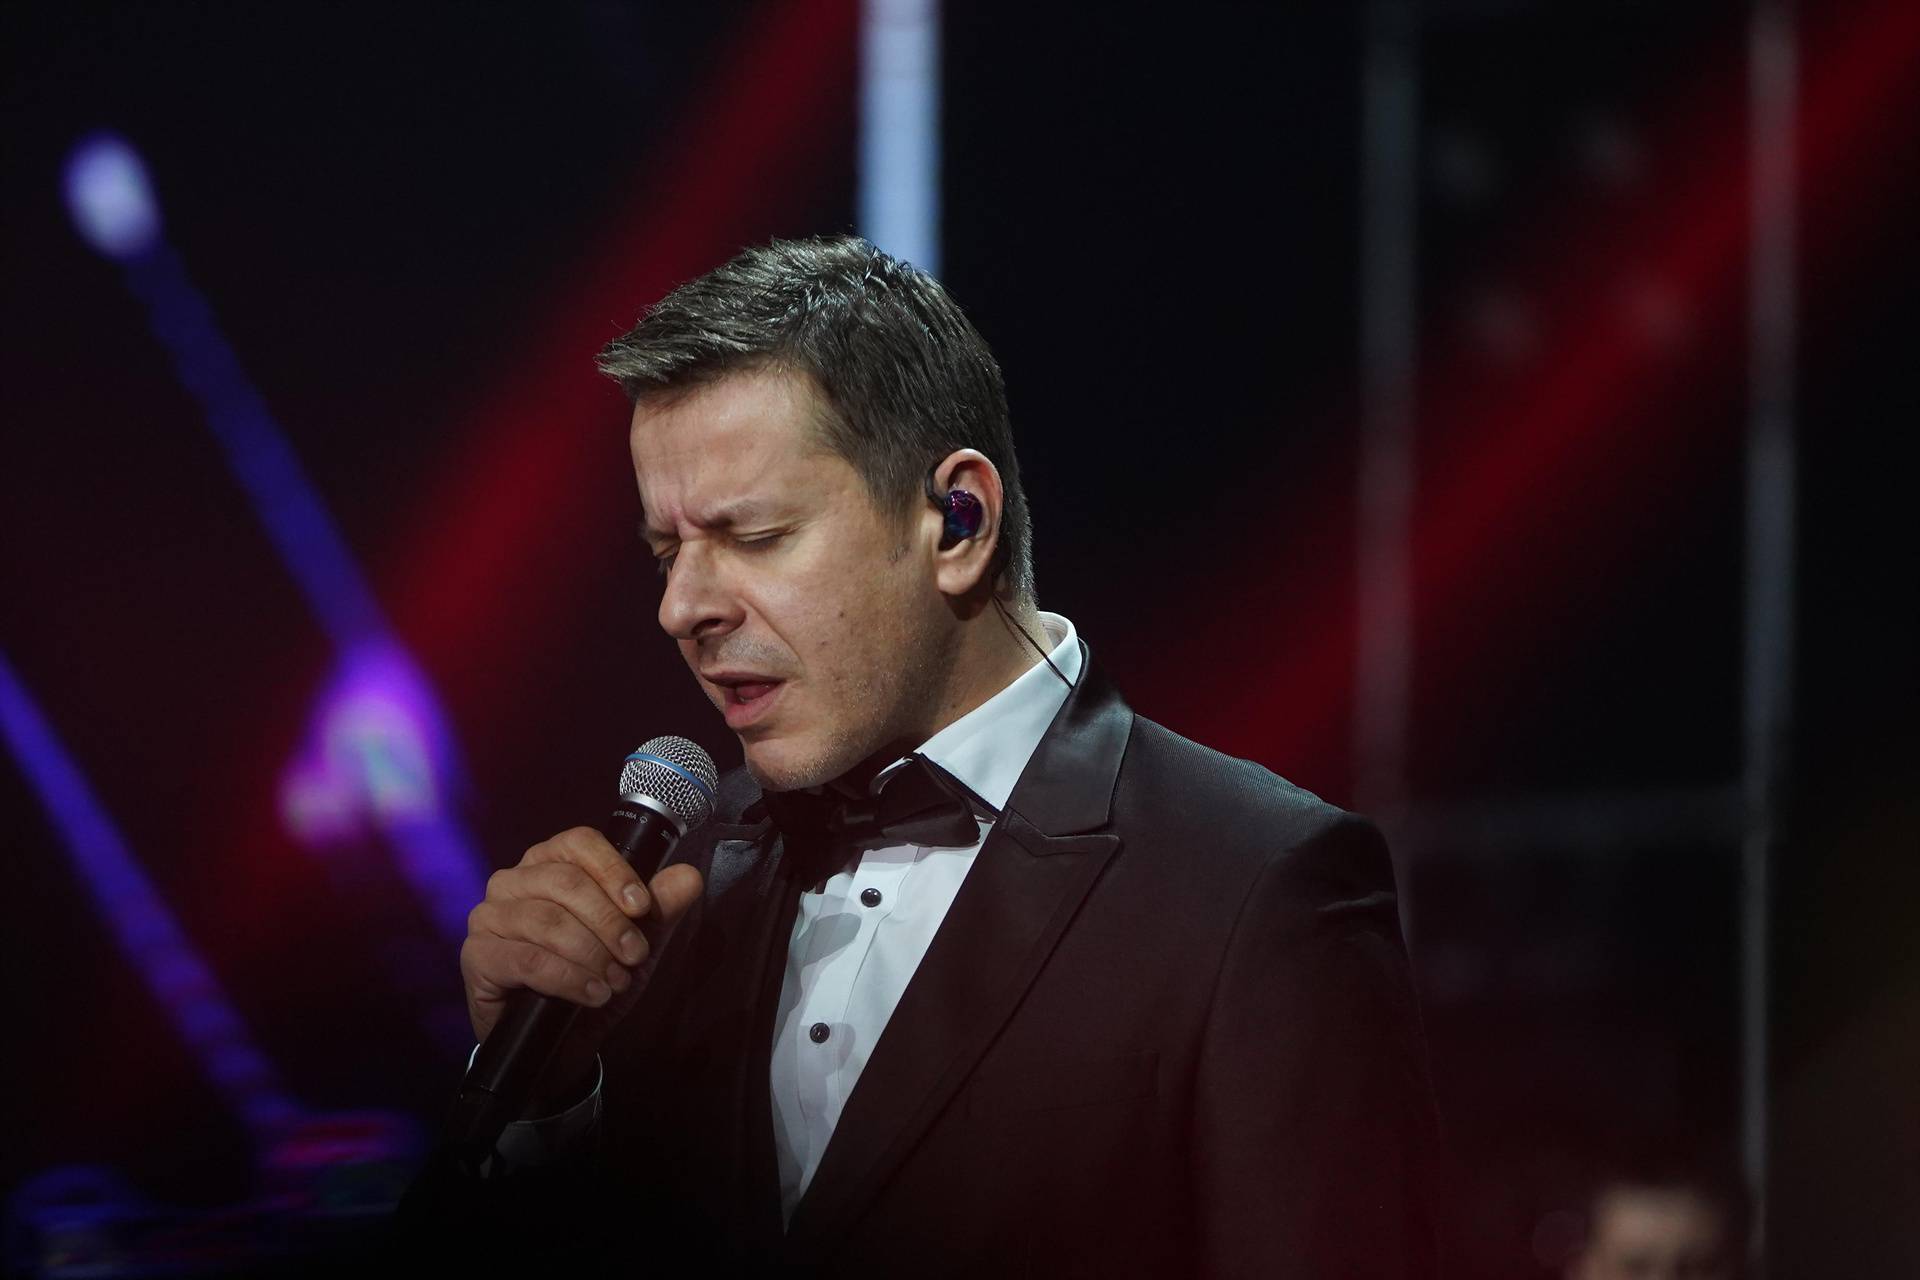 Pjevač Georgiev izvrijeđao je Jadranku Kosor: 'Baš se*ete, vi ste ksenofobična budaletina'